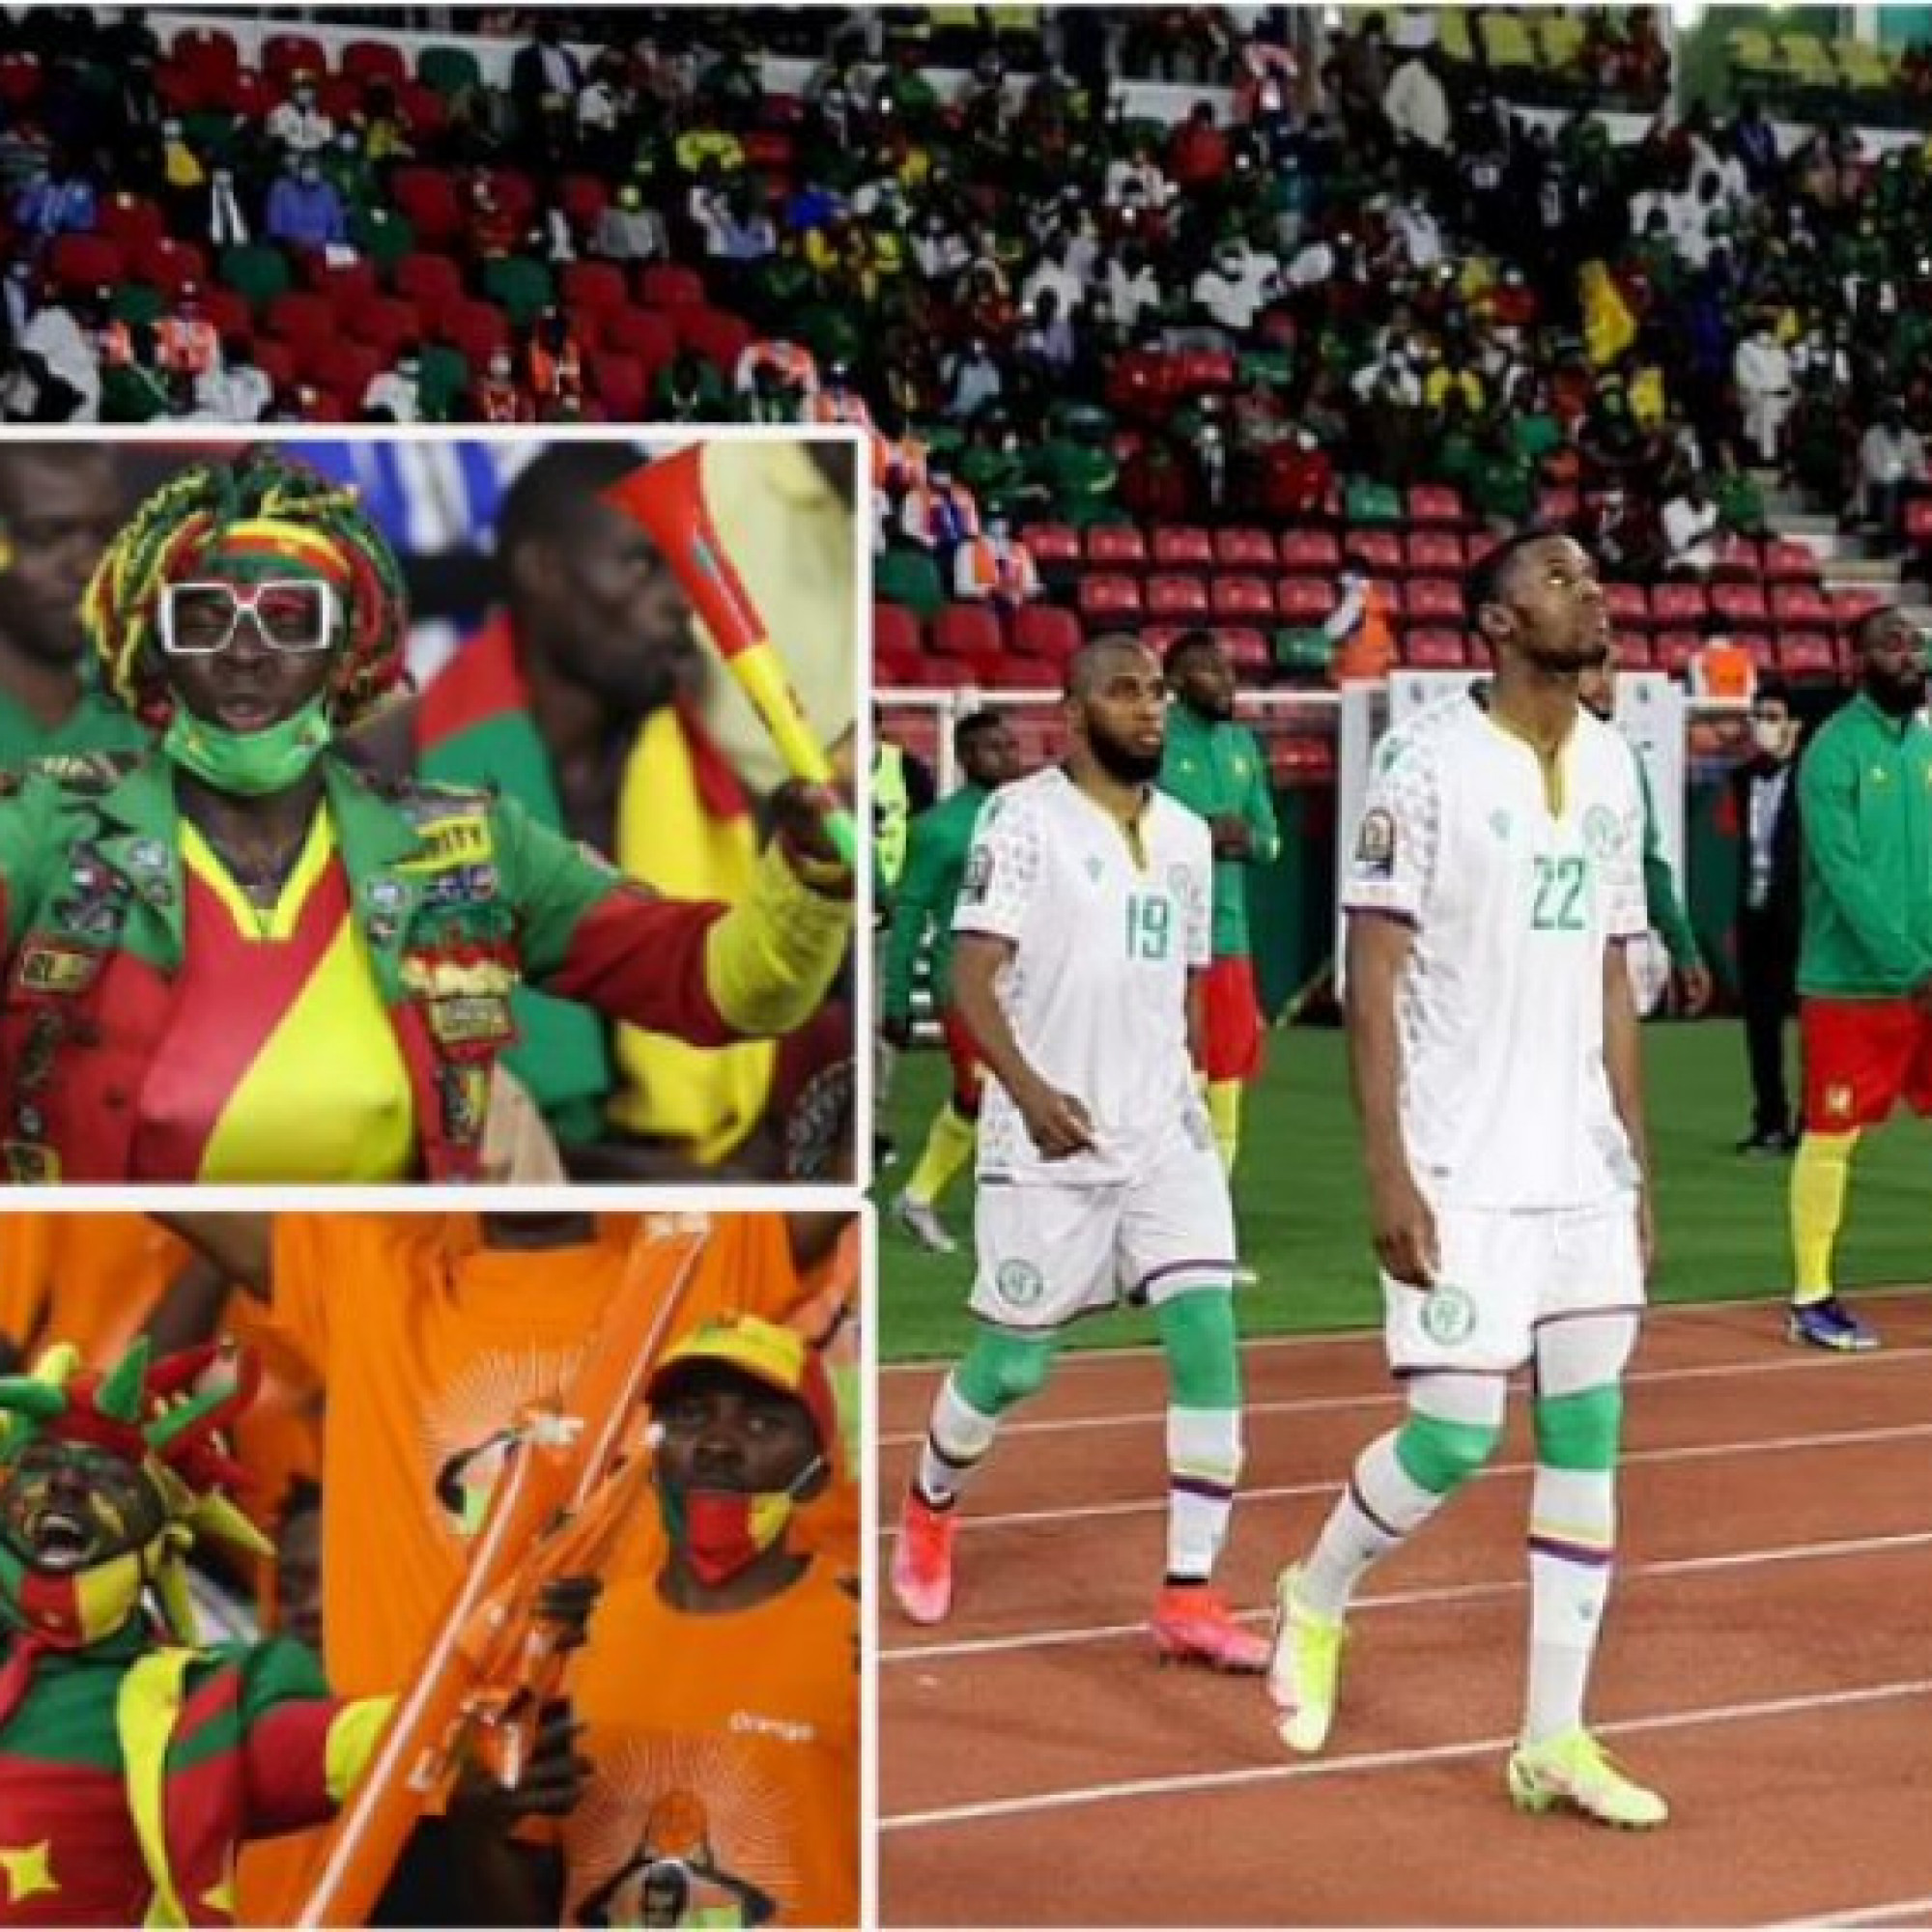  - Thảm họa chết người Cúp châu Phi: Thương vong tăng cao, clip sốc fan chen lấn vào sân